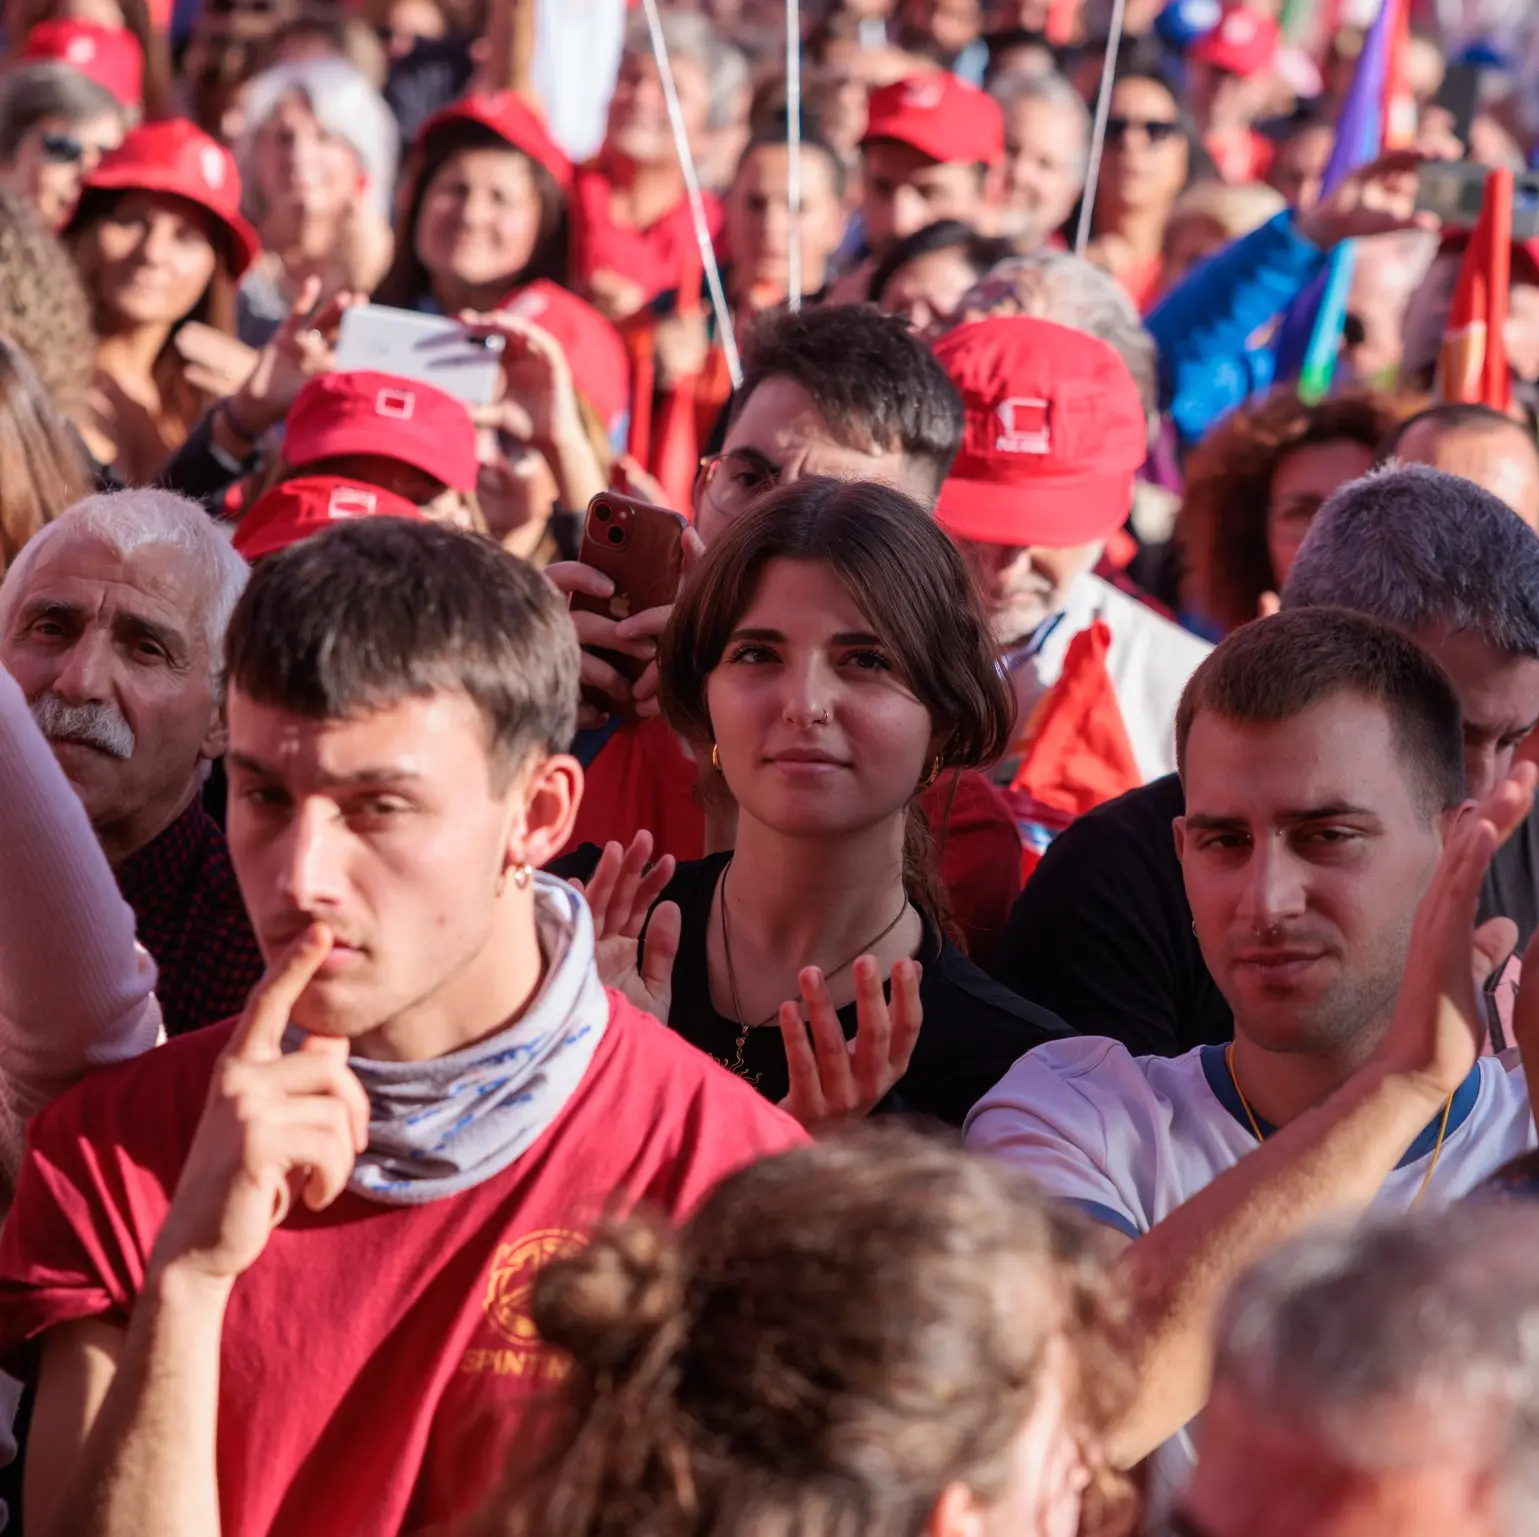 Lavoro: Udu, Cgil e Fdv domani a Roma presentano indagine su studenti lavoratori, “Troppo sfruttamento e precarietà”